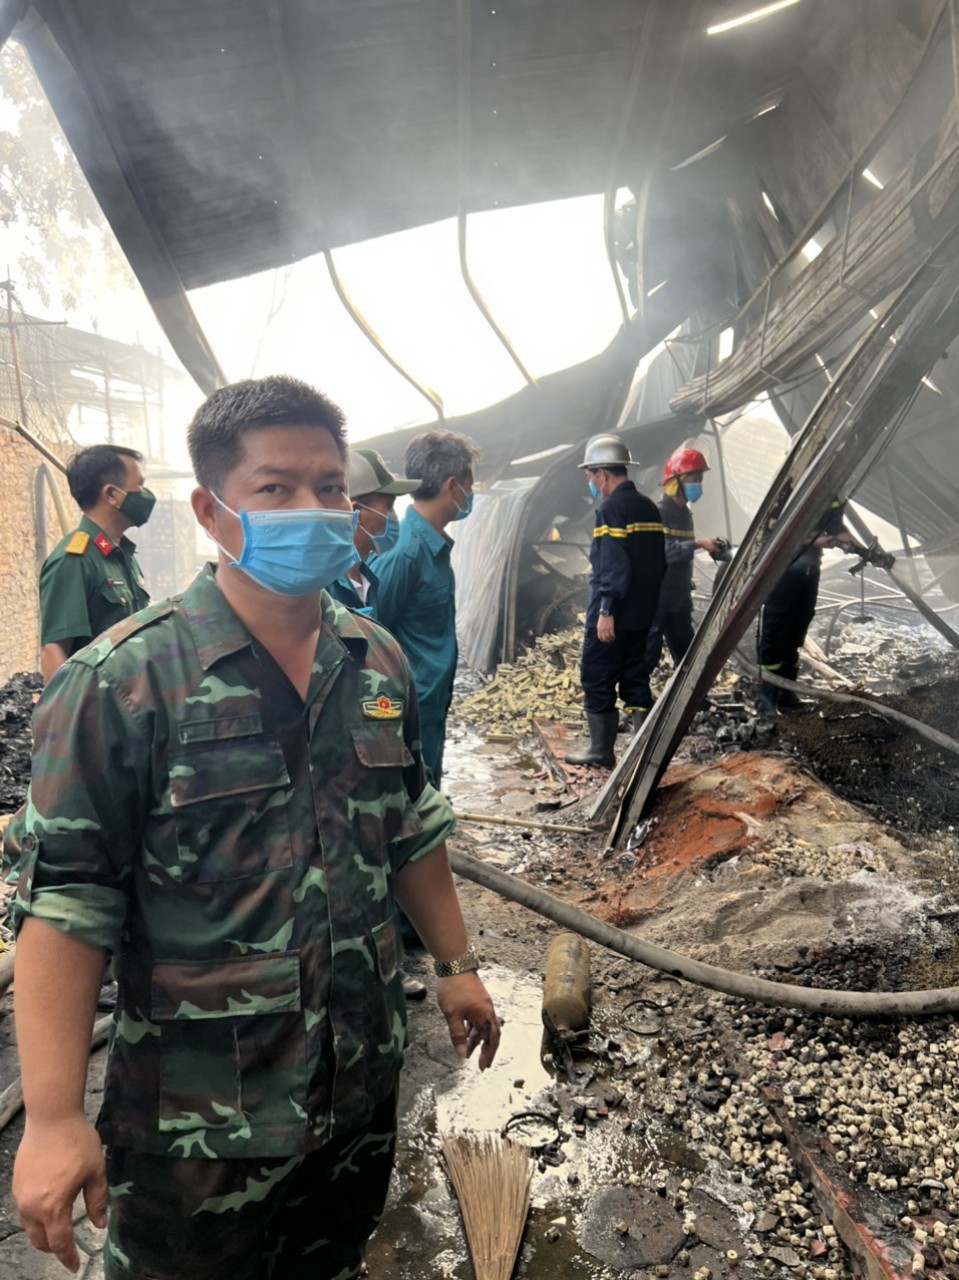 Hà Nội: Cháy kho thiết bị ở Nhật Tân, quận Tây Hồ - Ảnh 1